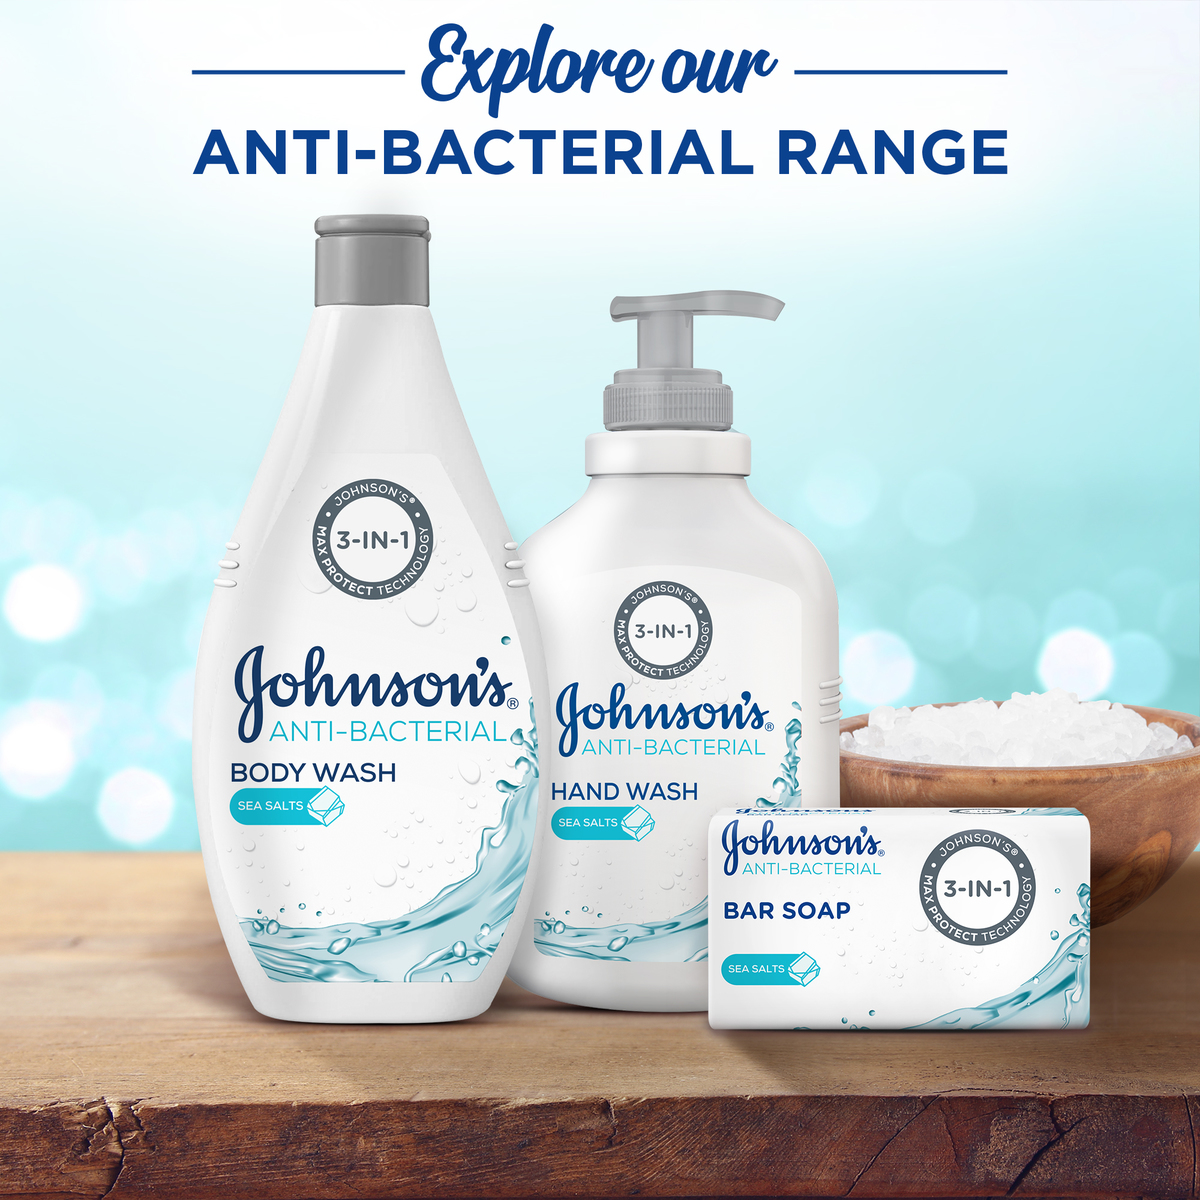 جونسون 3 x 1 سائل تنظيف اليدين مضاد للبكتيريا بملح البحر300 مل